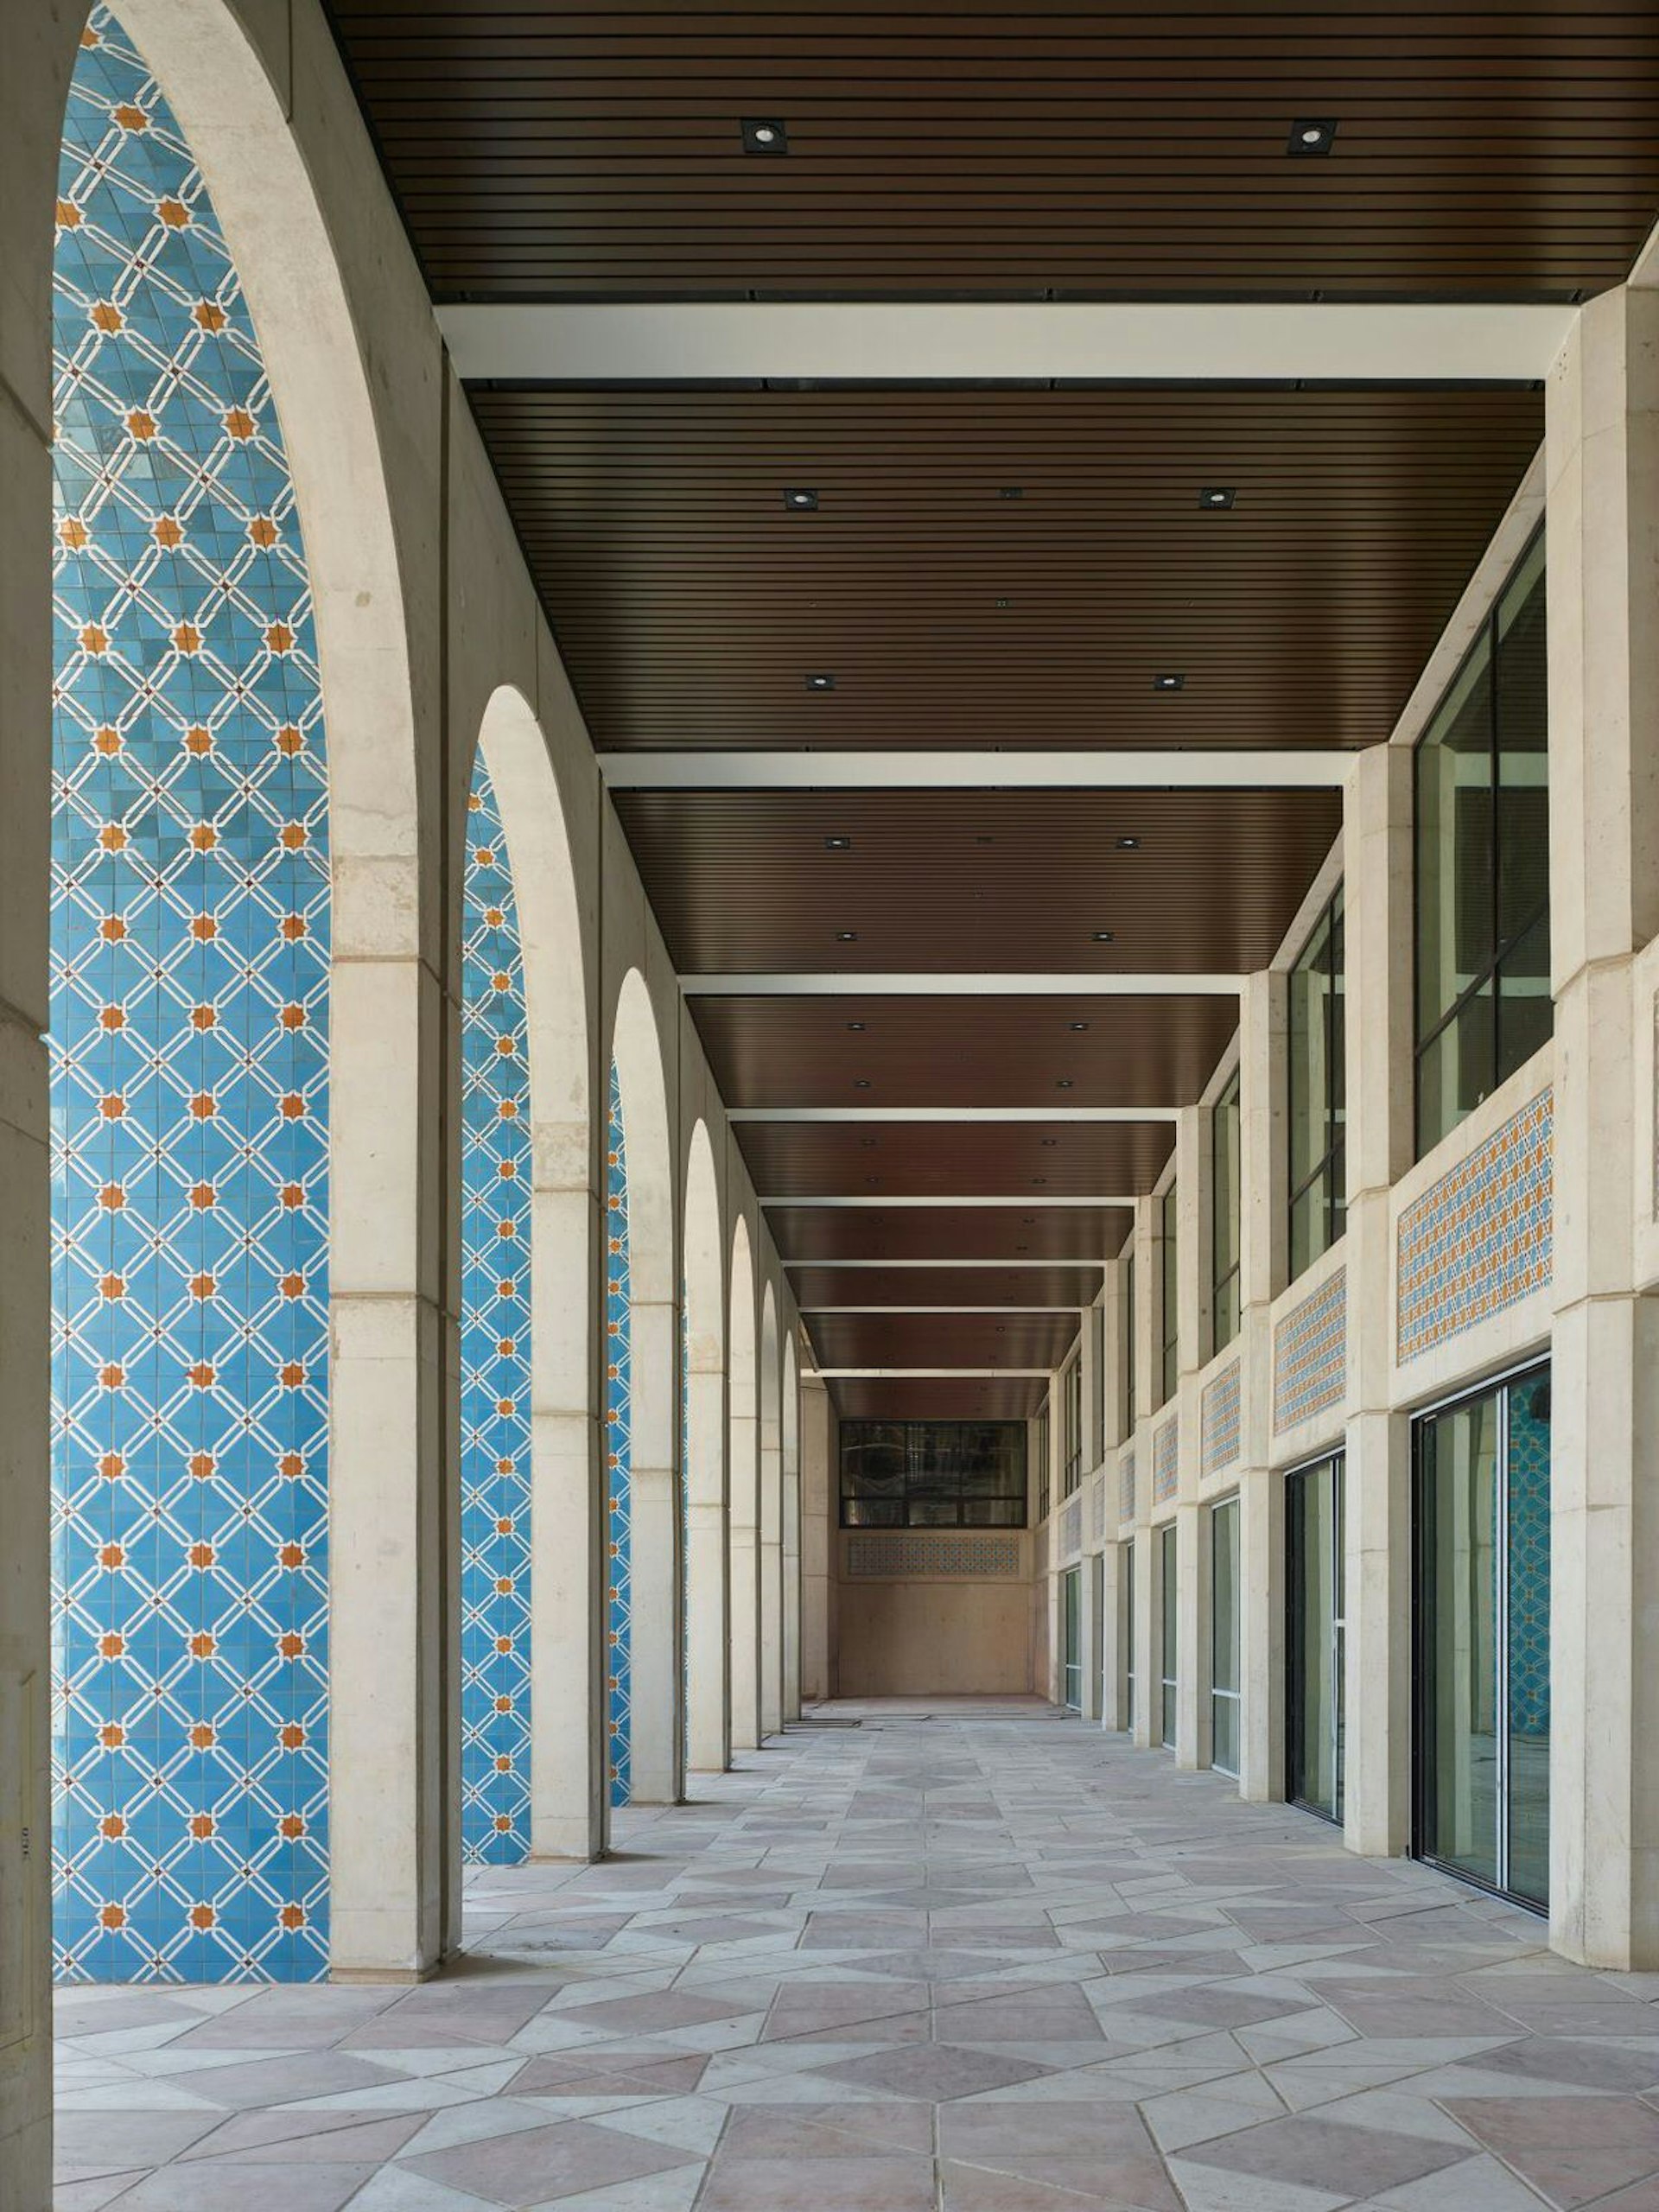 Arcade of the Cultural Foundation, Abu Dhabi, United Arab Emirates